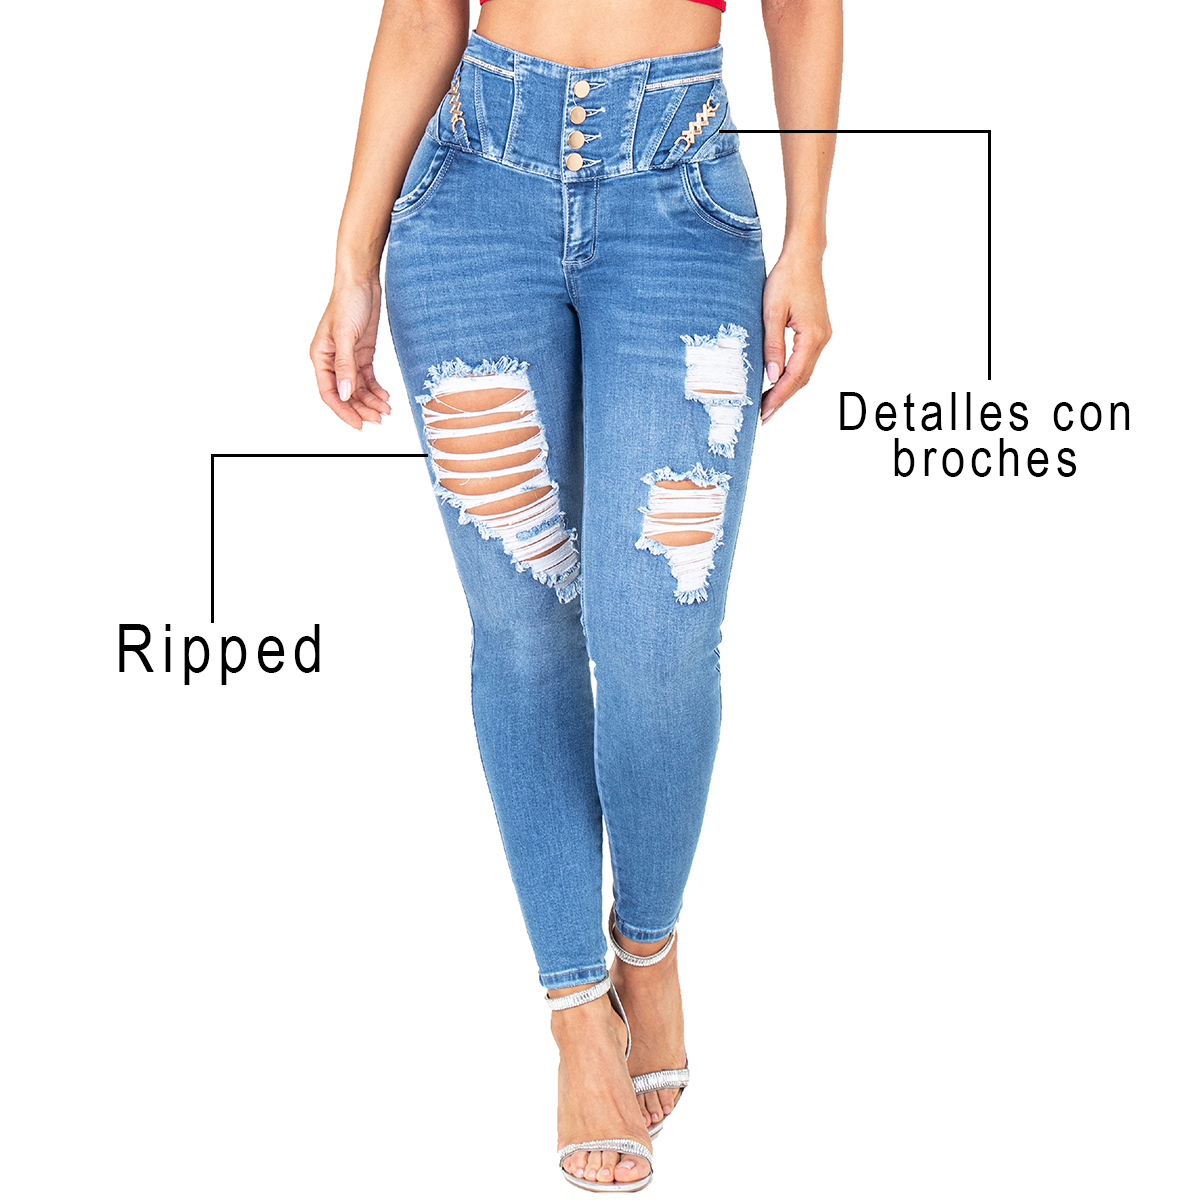 El jean colombiano con broches combina las pinzas en la parte trasera más un corte en forma corazón que hace un efecto de redondez y elevación de glúteos.